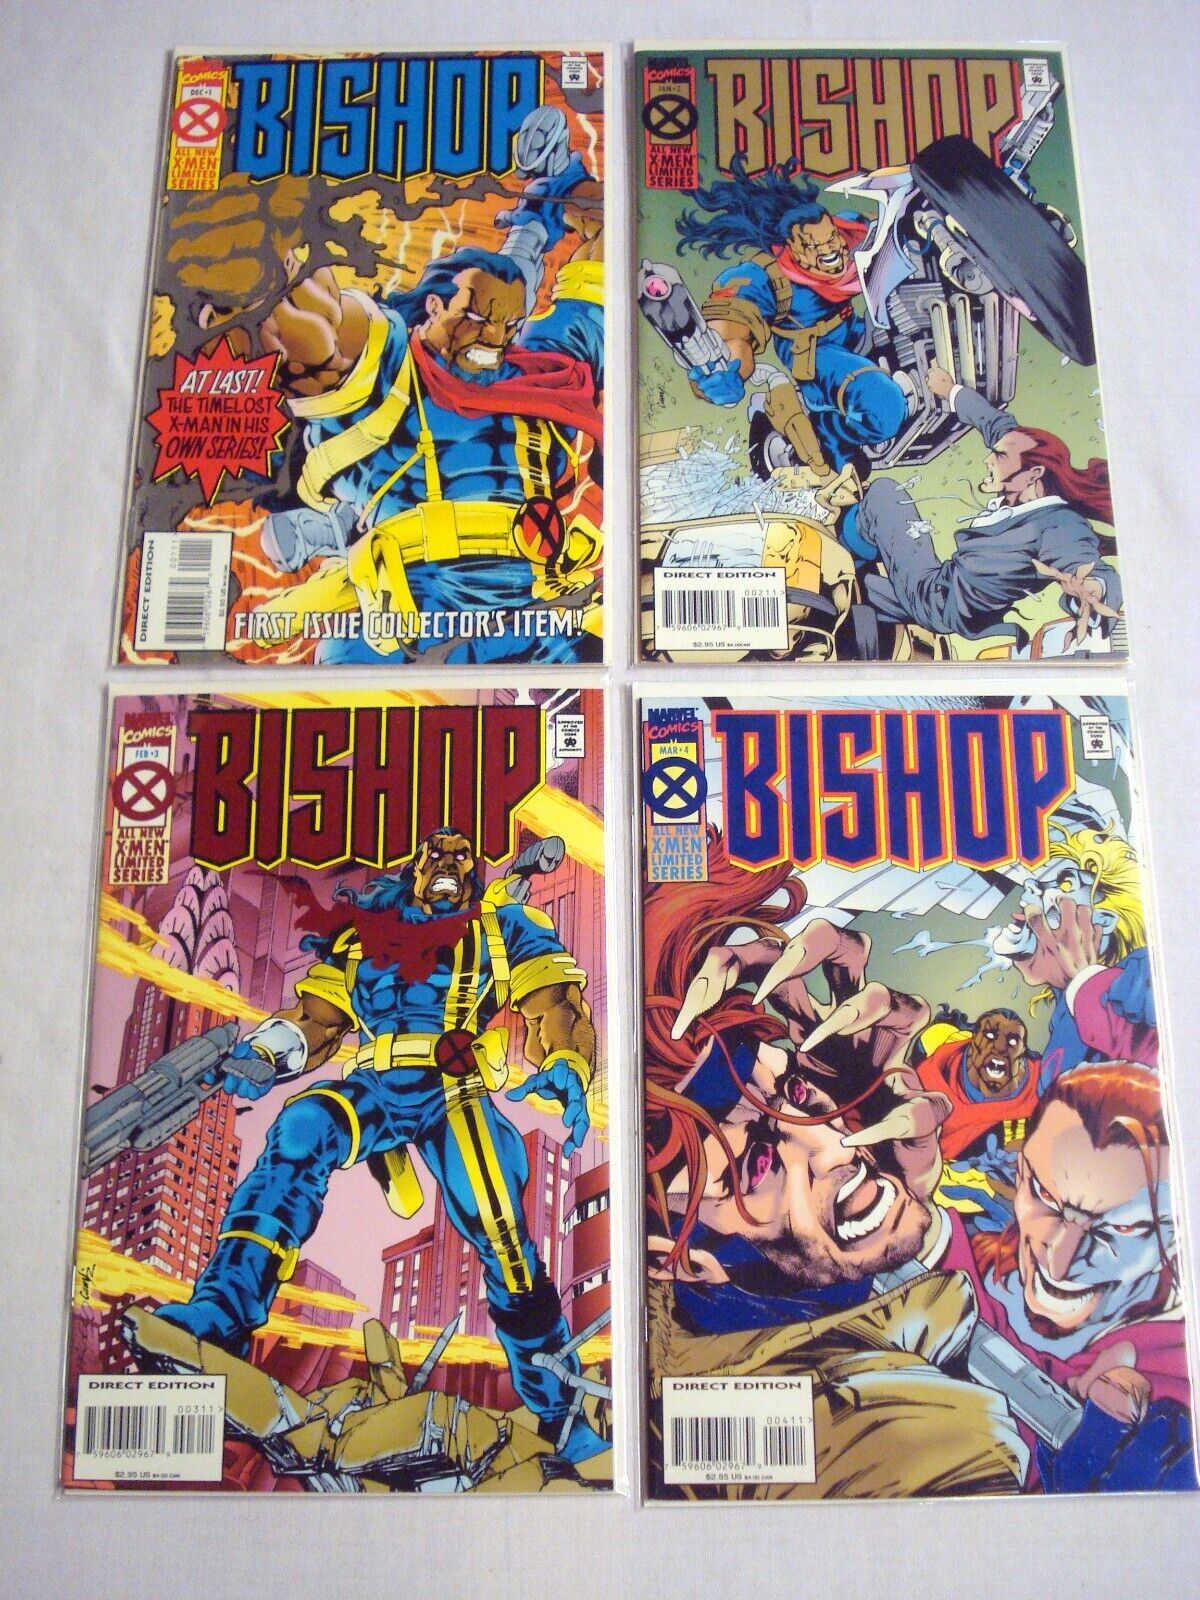 Bishop #1, #2, #3, #4 Complete Series Fine- 1994-1995 Marvel Comics